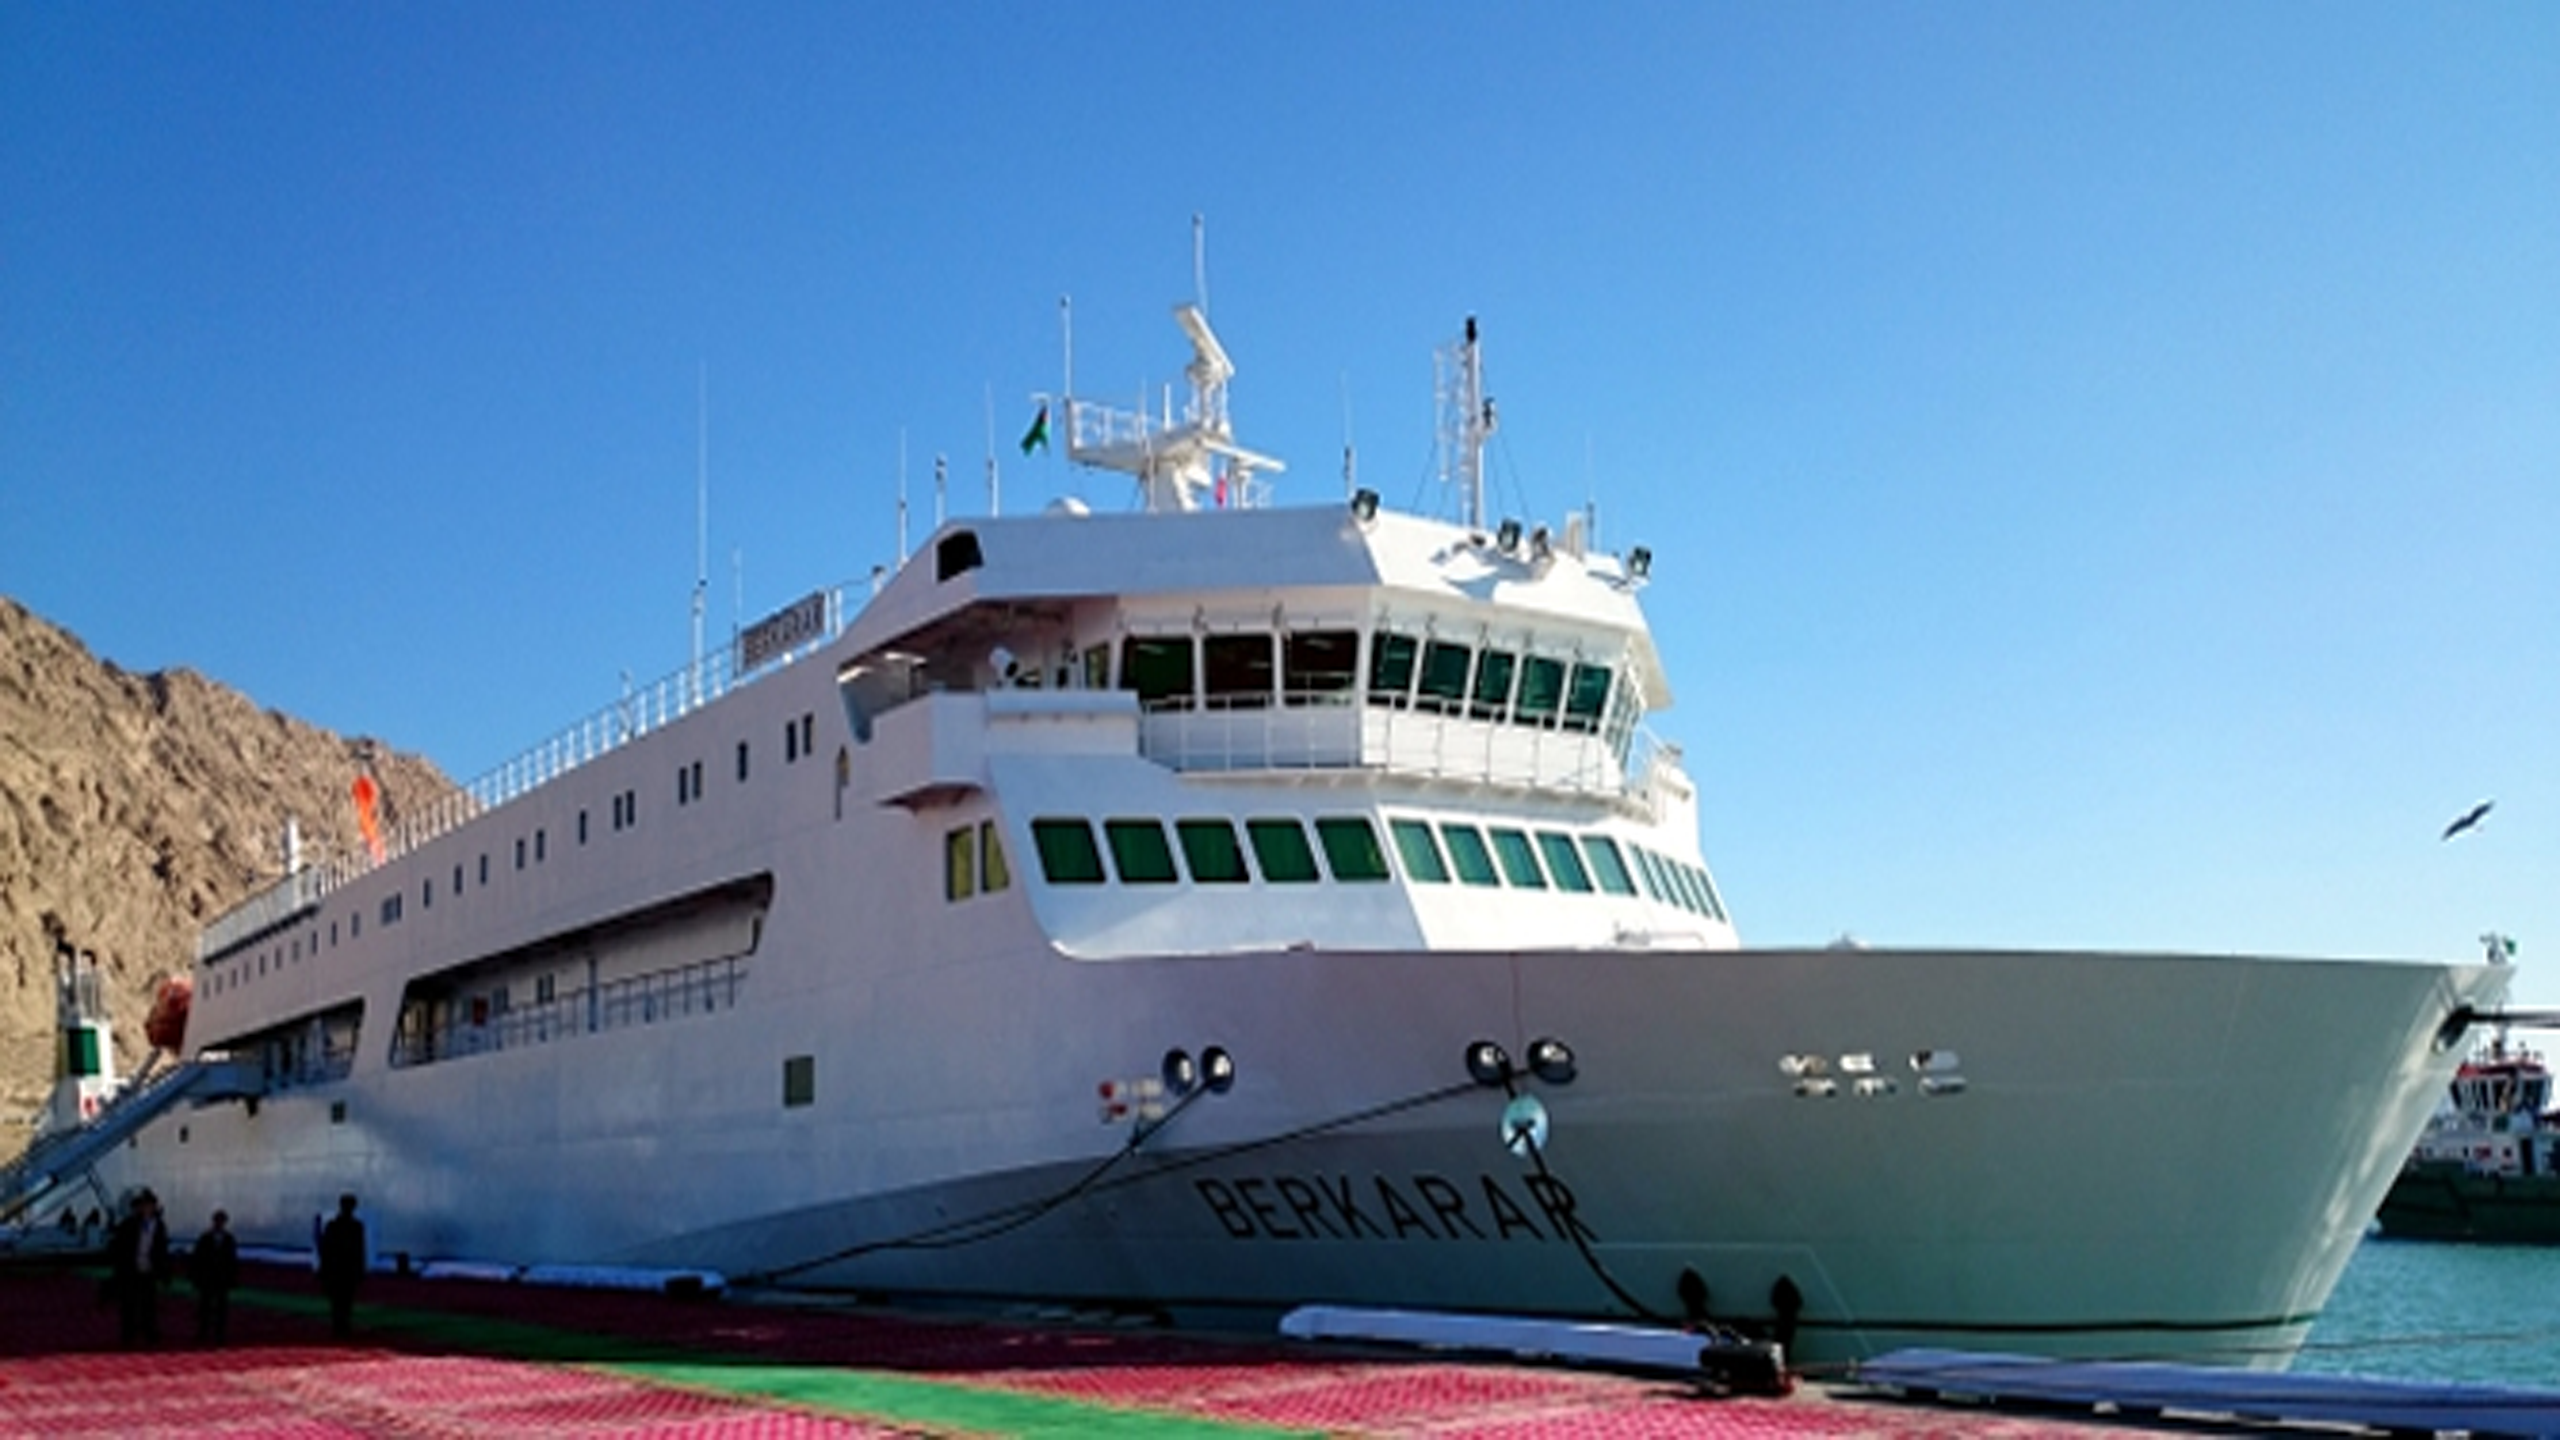 Deniz Söwda Floty – Berkarar Ve Bahtiyar Gemileri Tamir Bakım İşleri